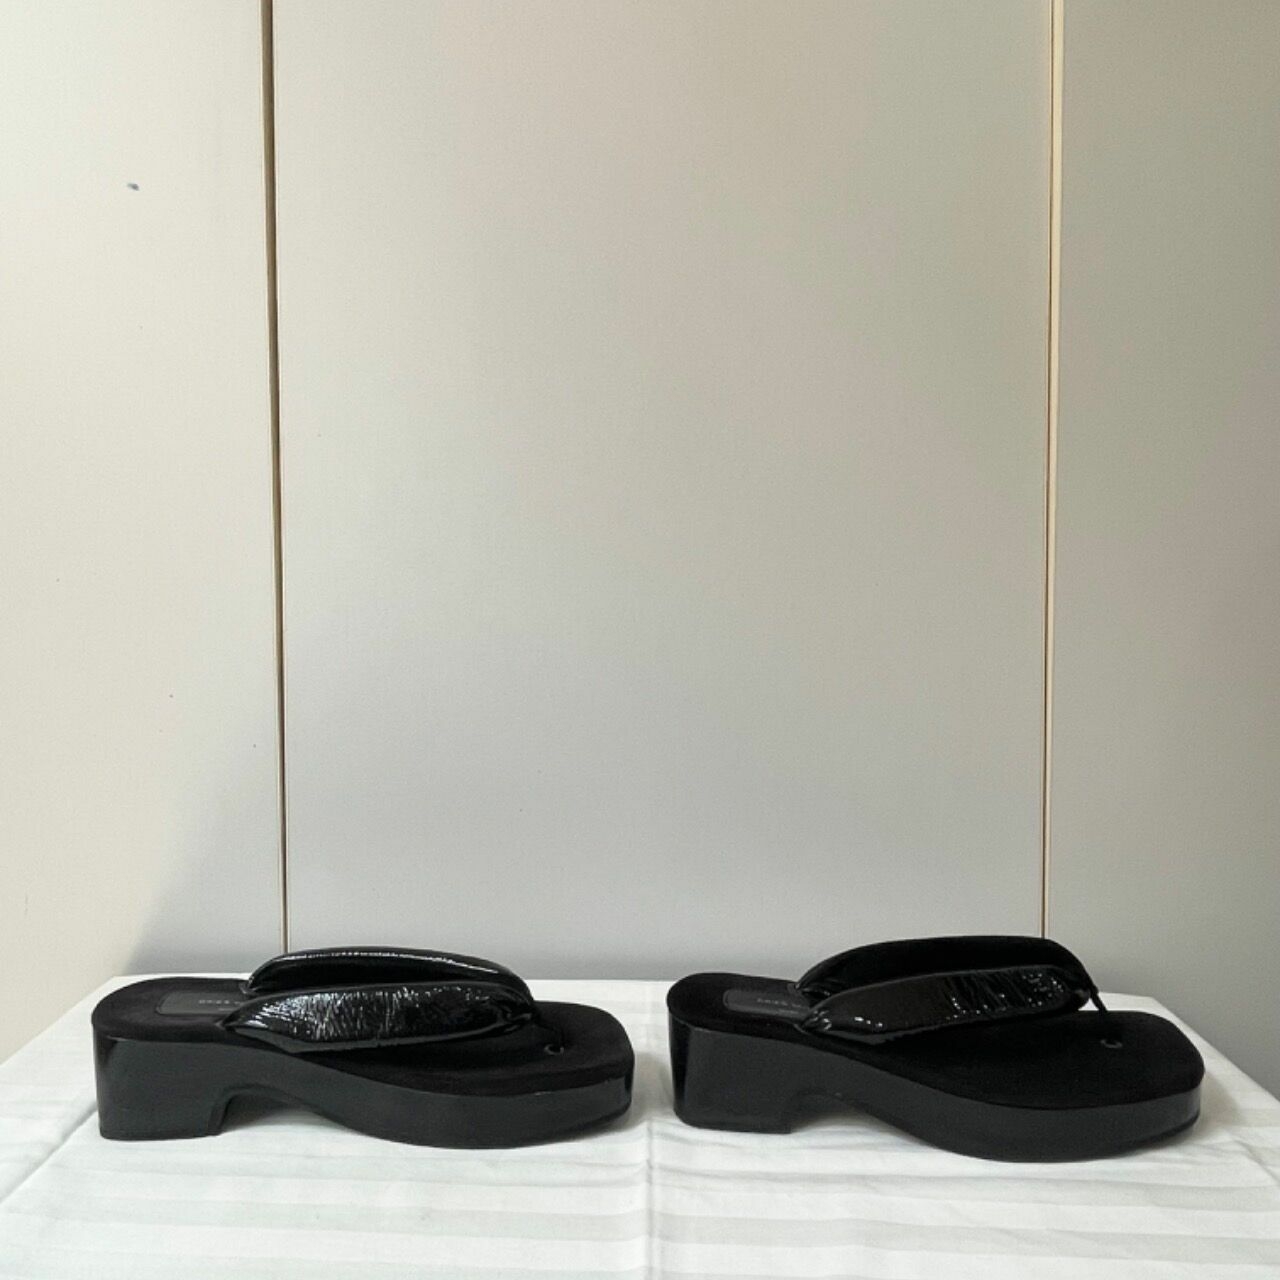 Dries Van Noten Black Sandals